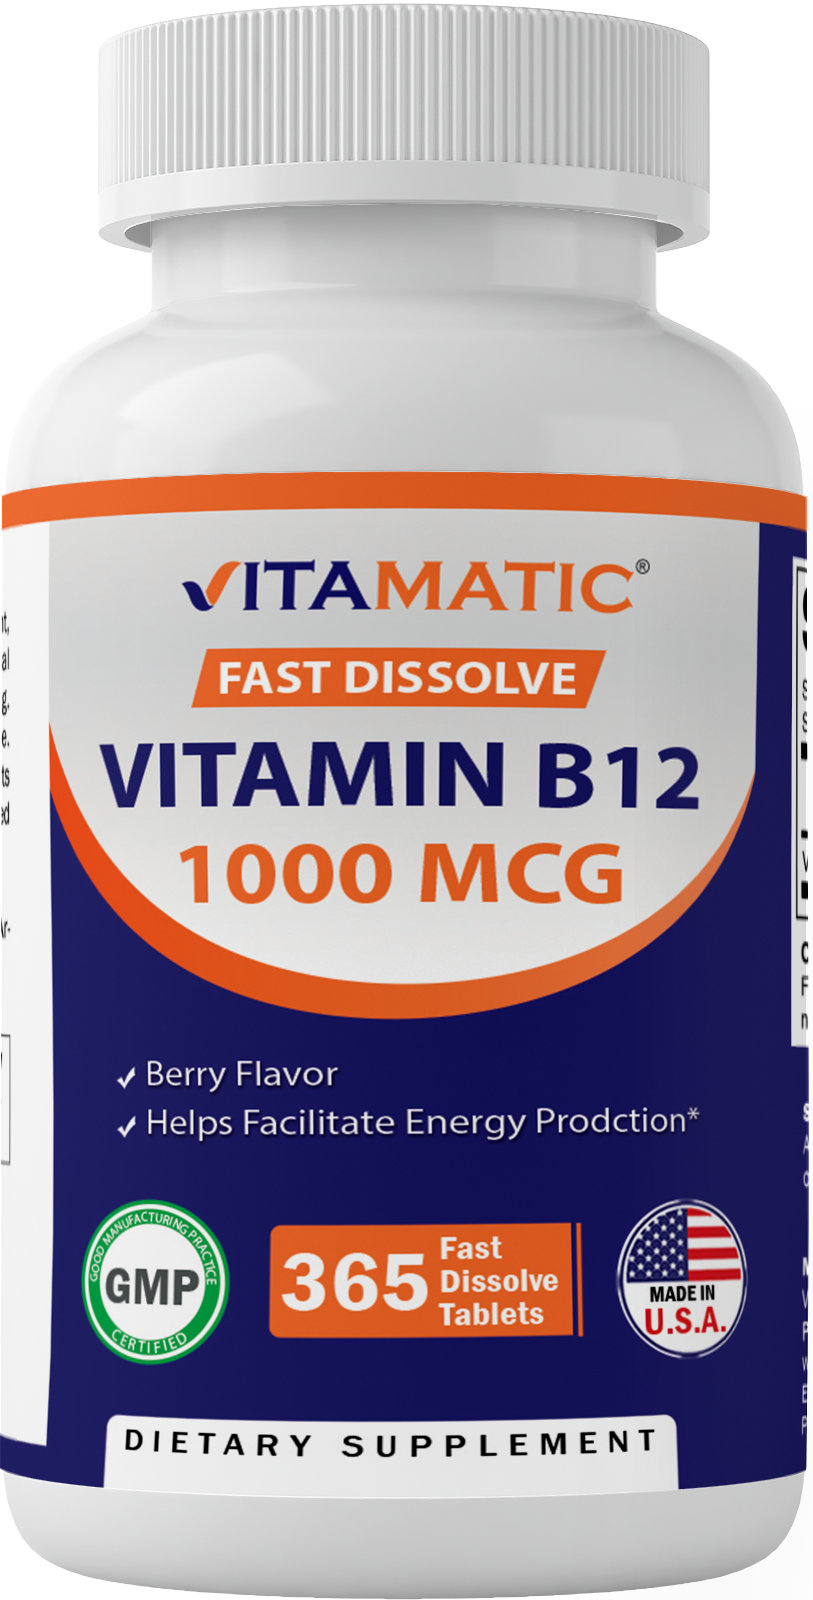 Vitamin B12 1000 Mcg 365 Fast Dissolve Tablets Vitamatic 7087